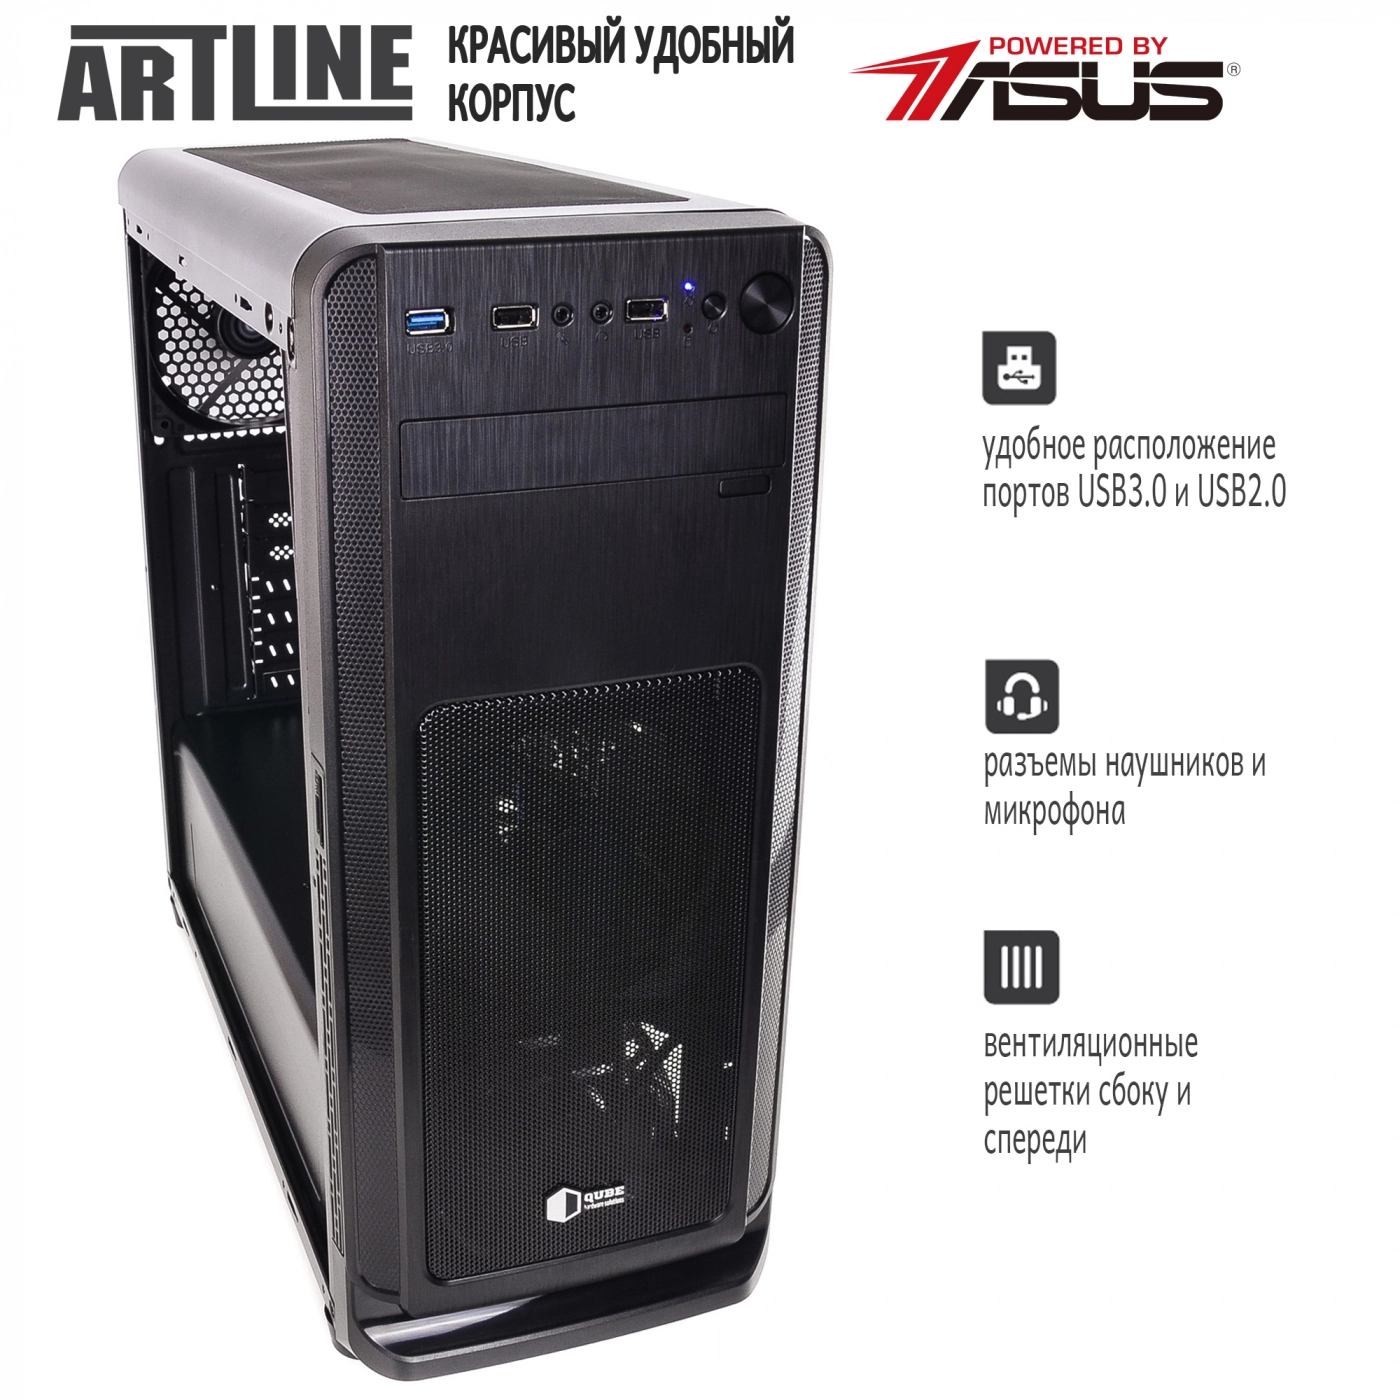 Купить Сервер ARTLINE Business T15v11 - фото 4